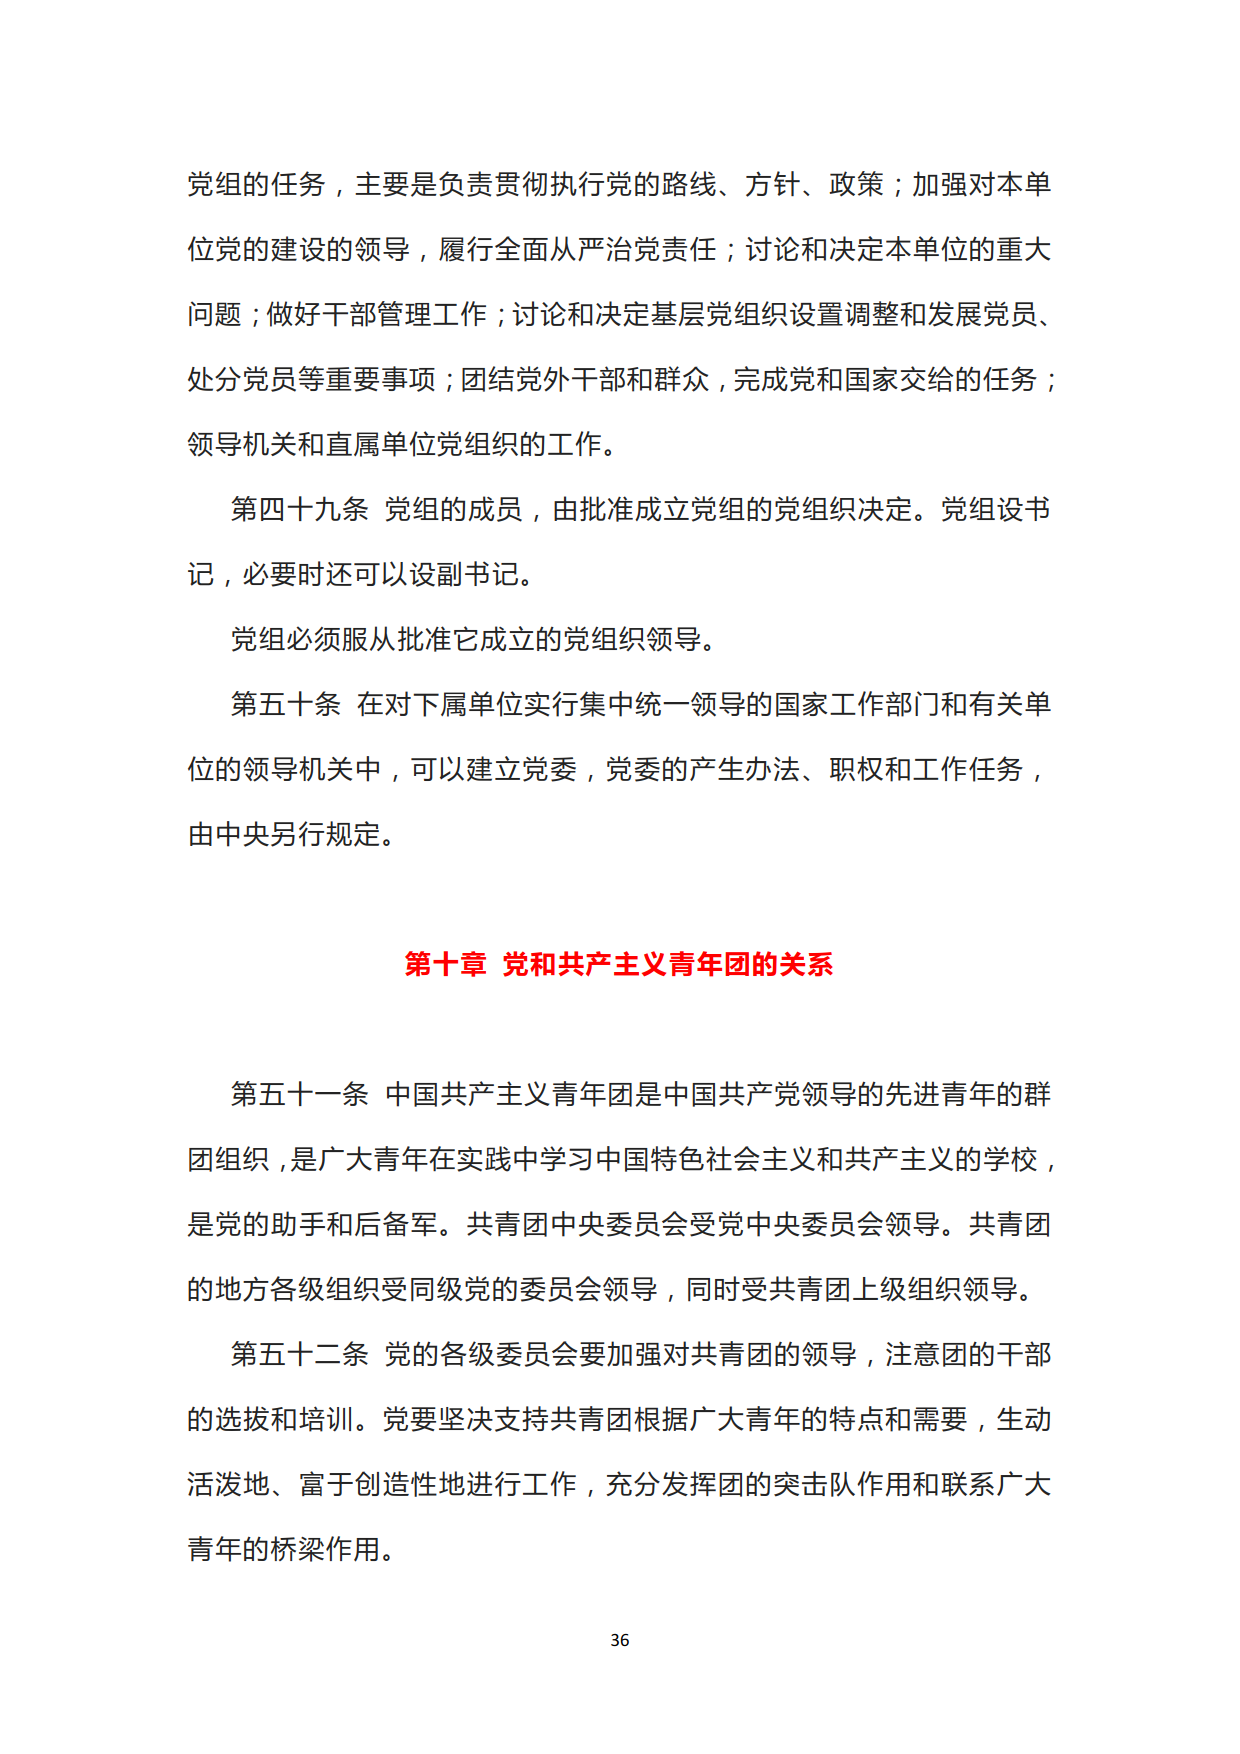 中国共产党章程_36.png